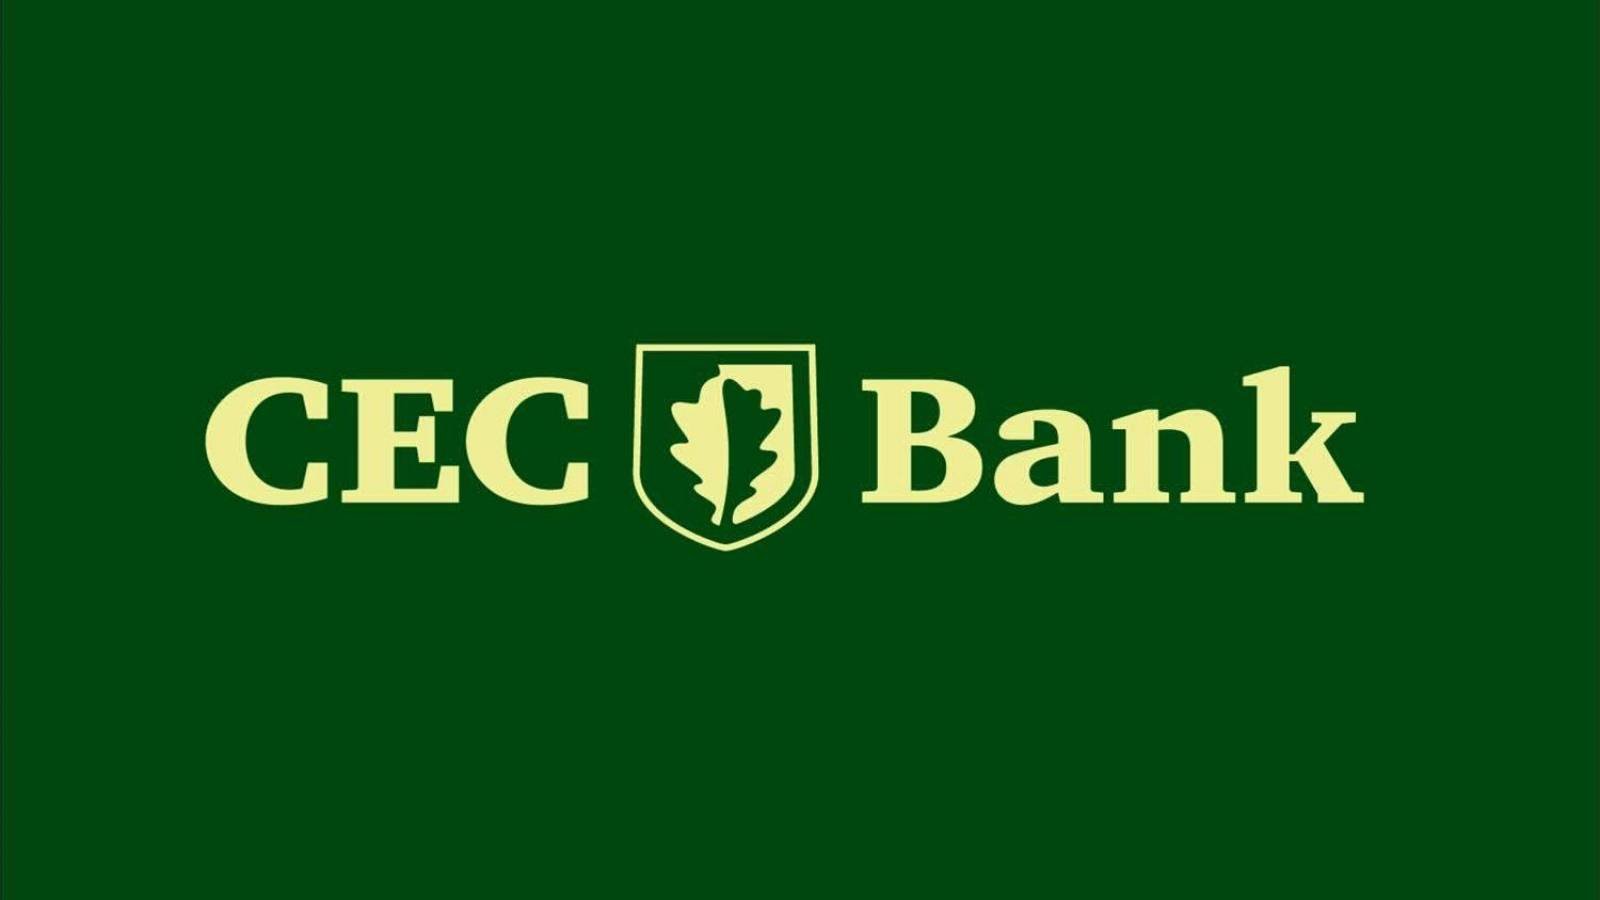 CEC Bank hastighed